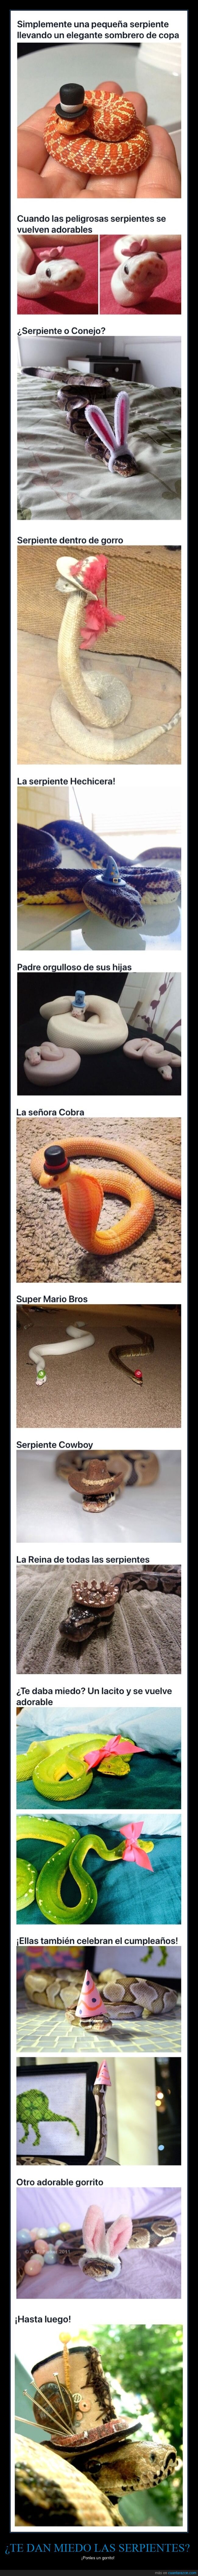 serpientes,sombreros